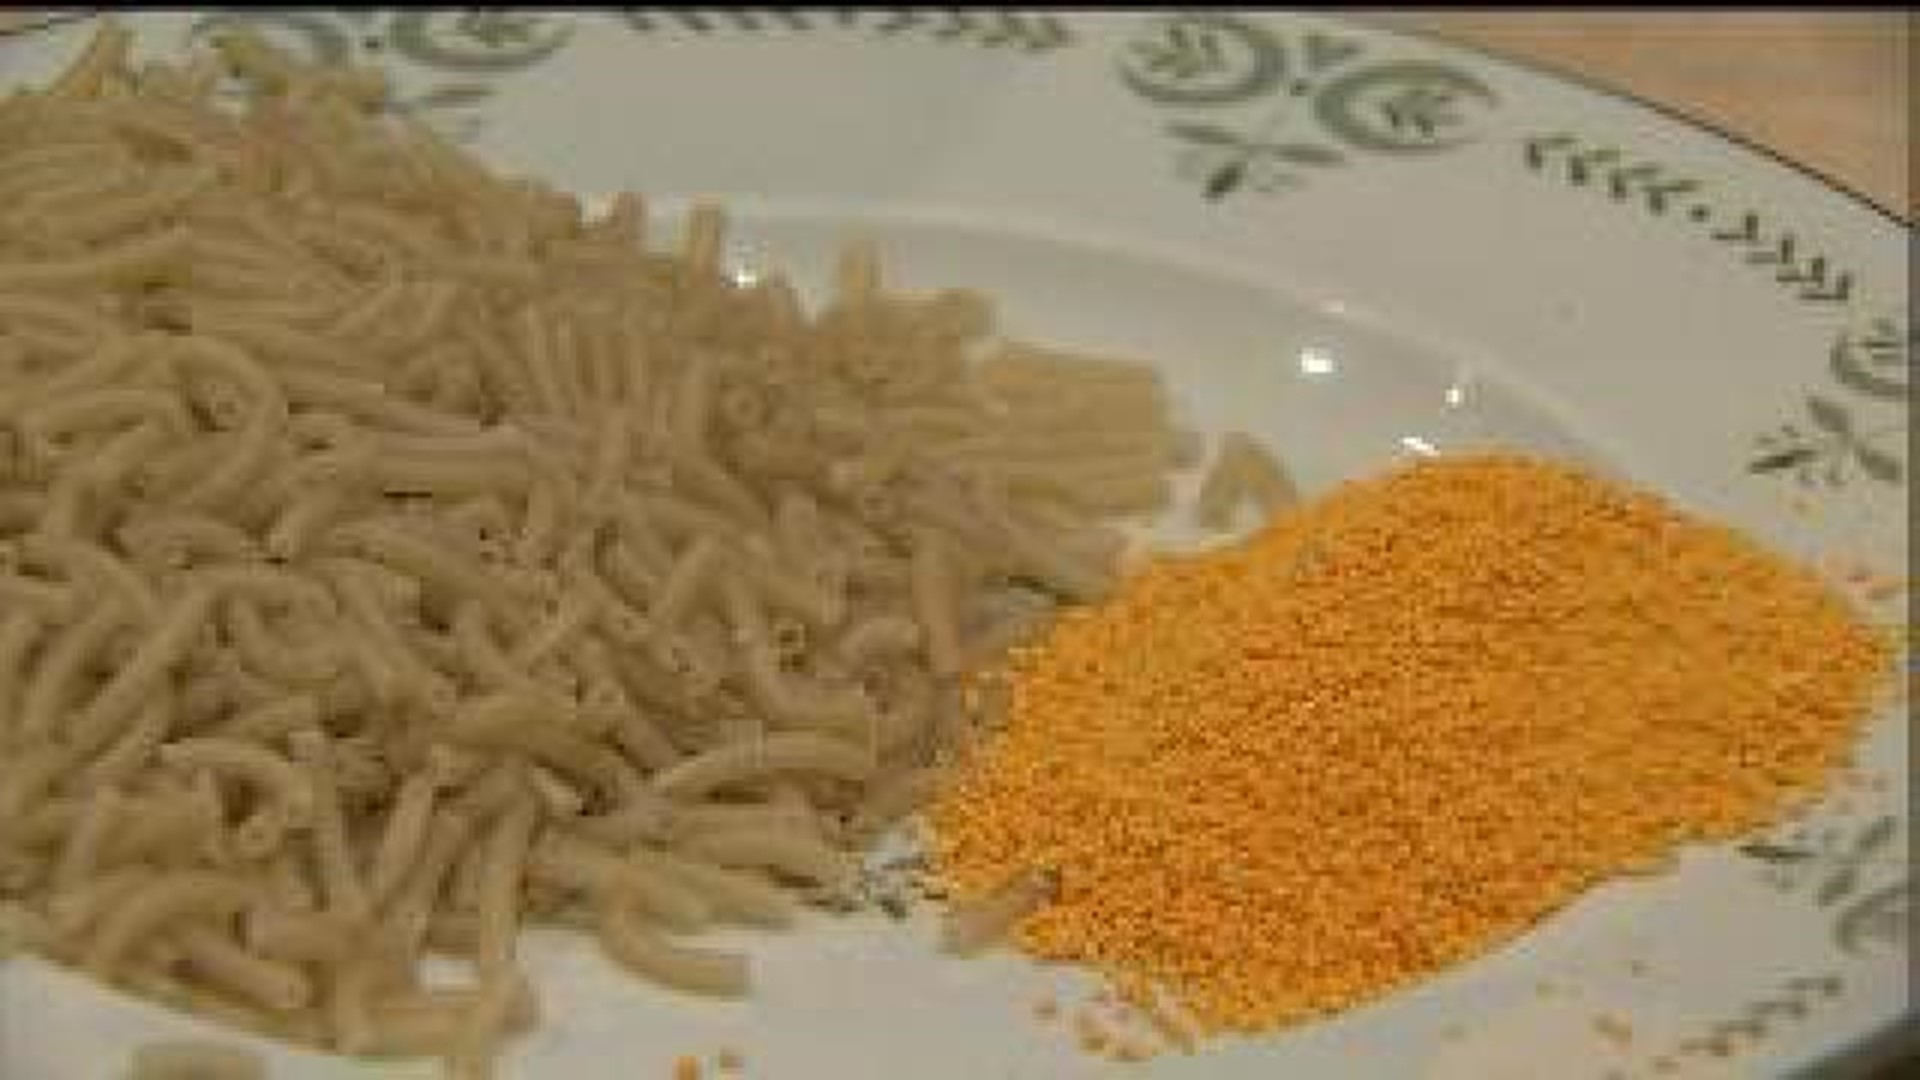 Kraft to stop using dyes in macaroni